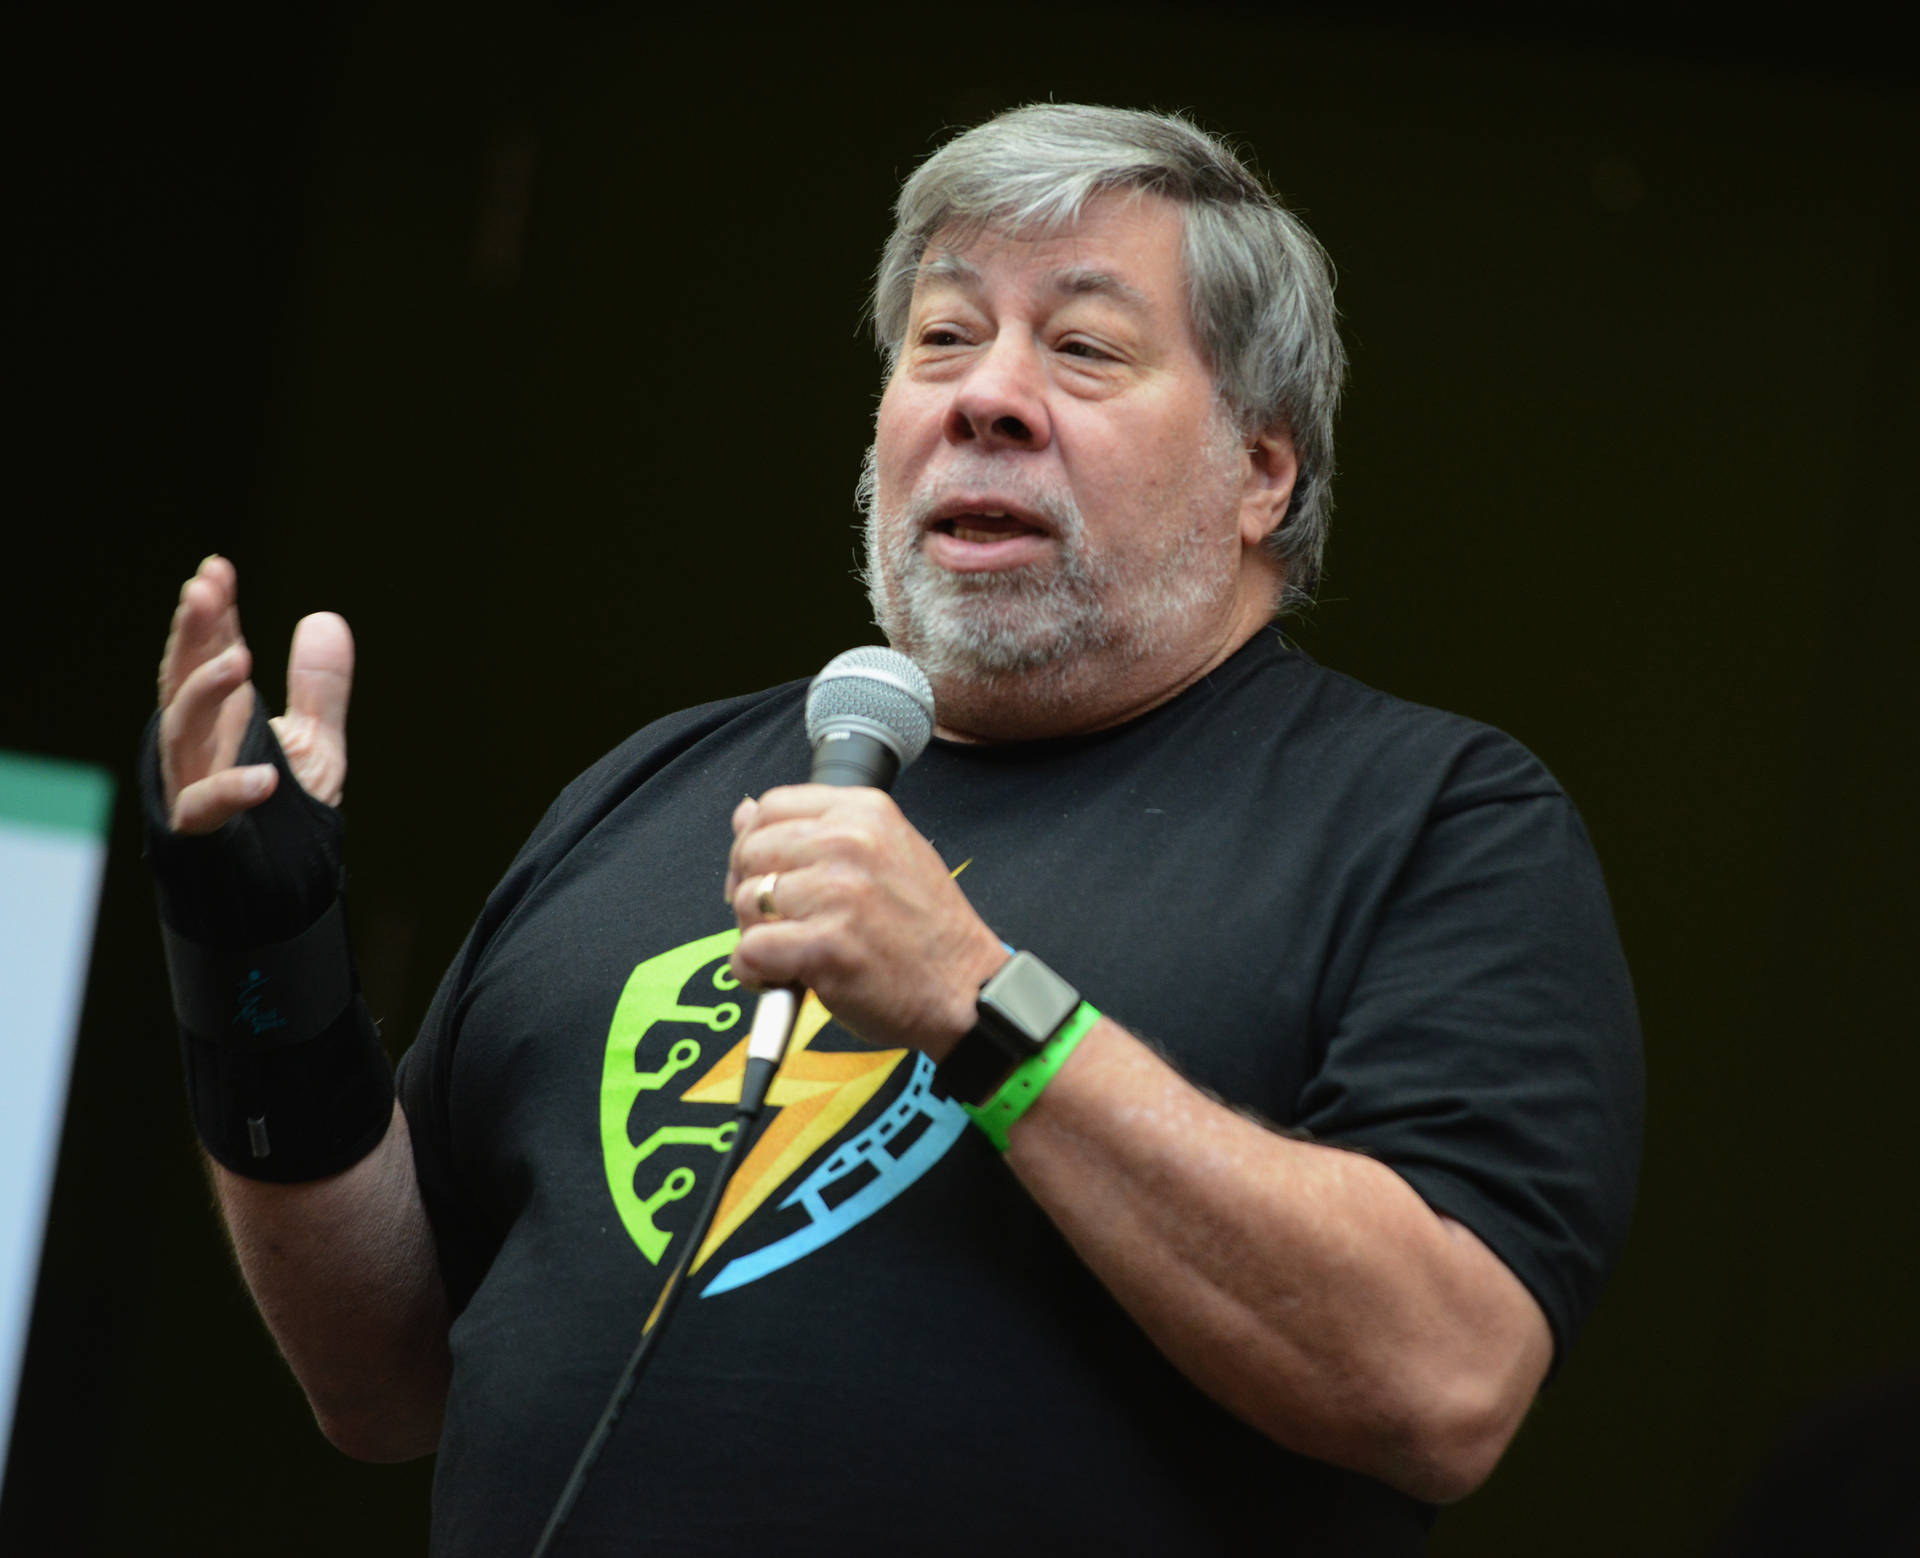 Steve Wozniak taler mens han holder mikrofonen Wallpaper